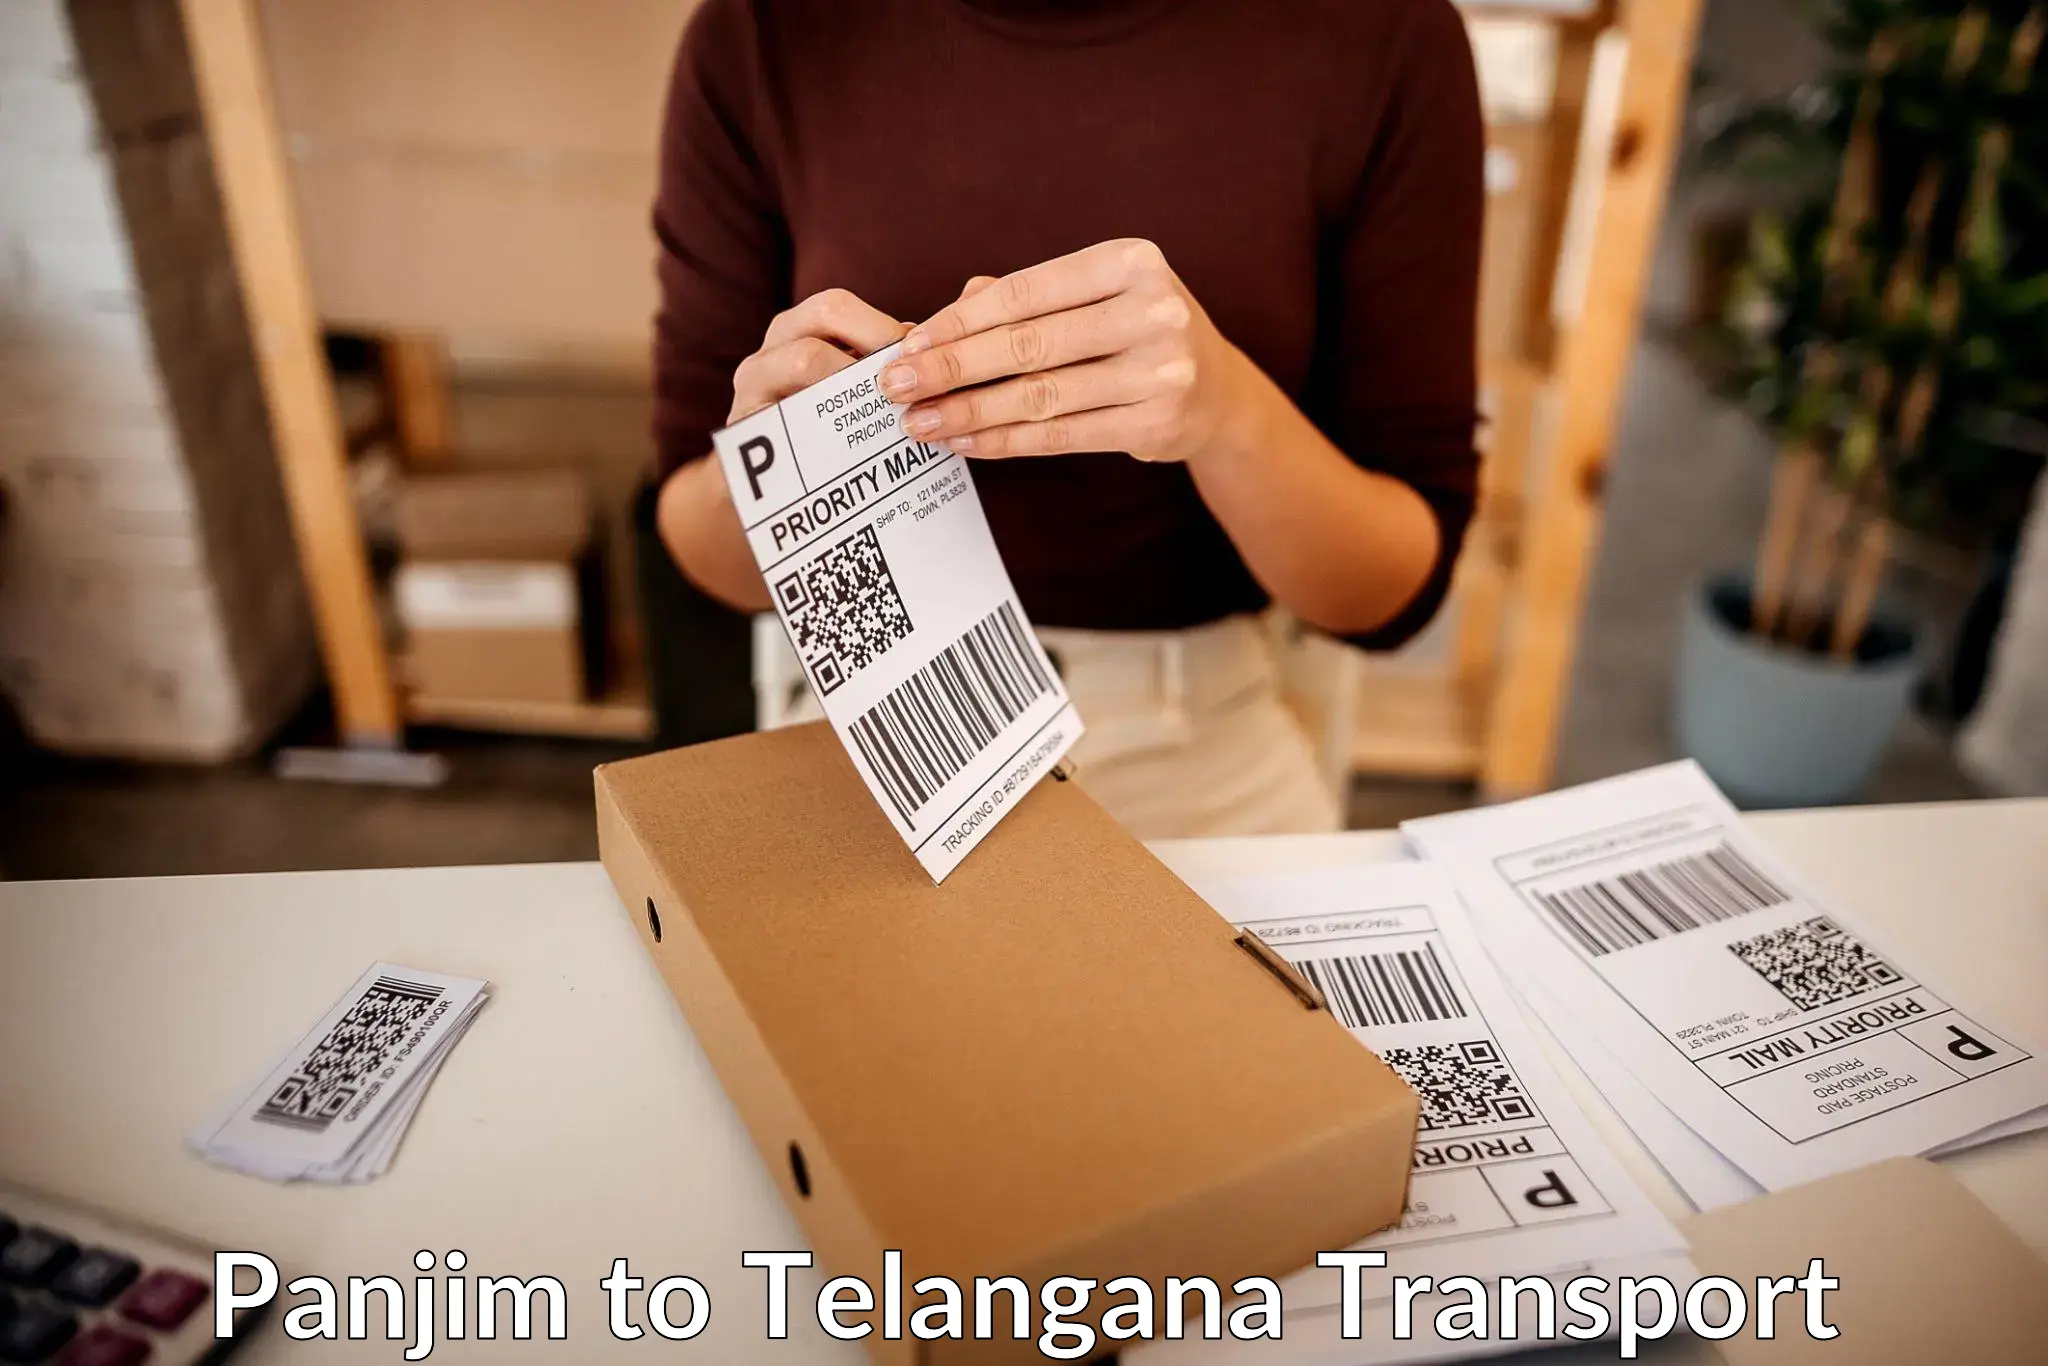 Bike shipping service Panjim to Telangana